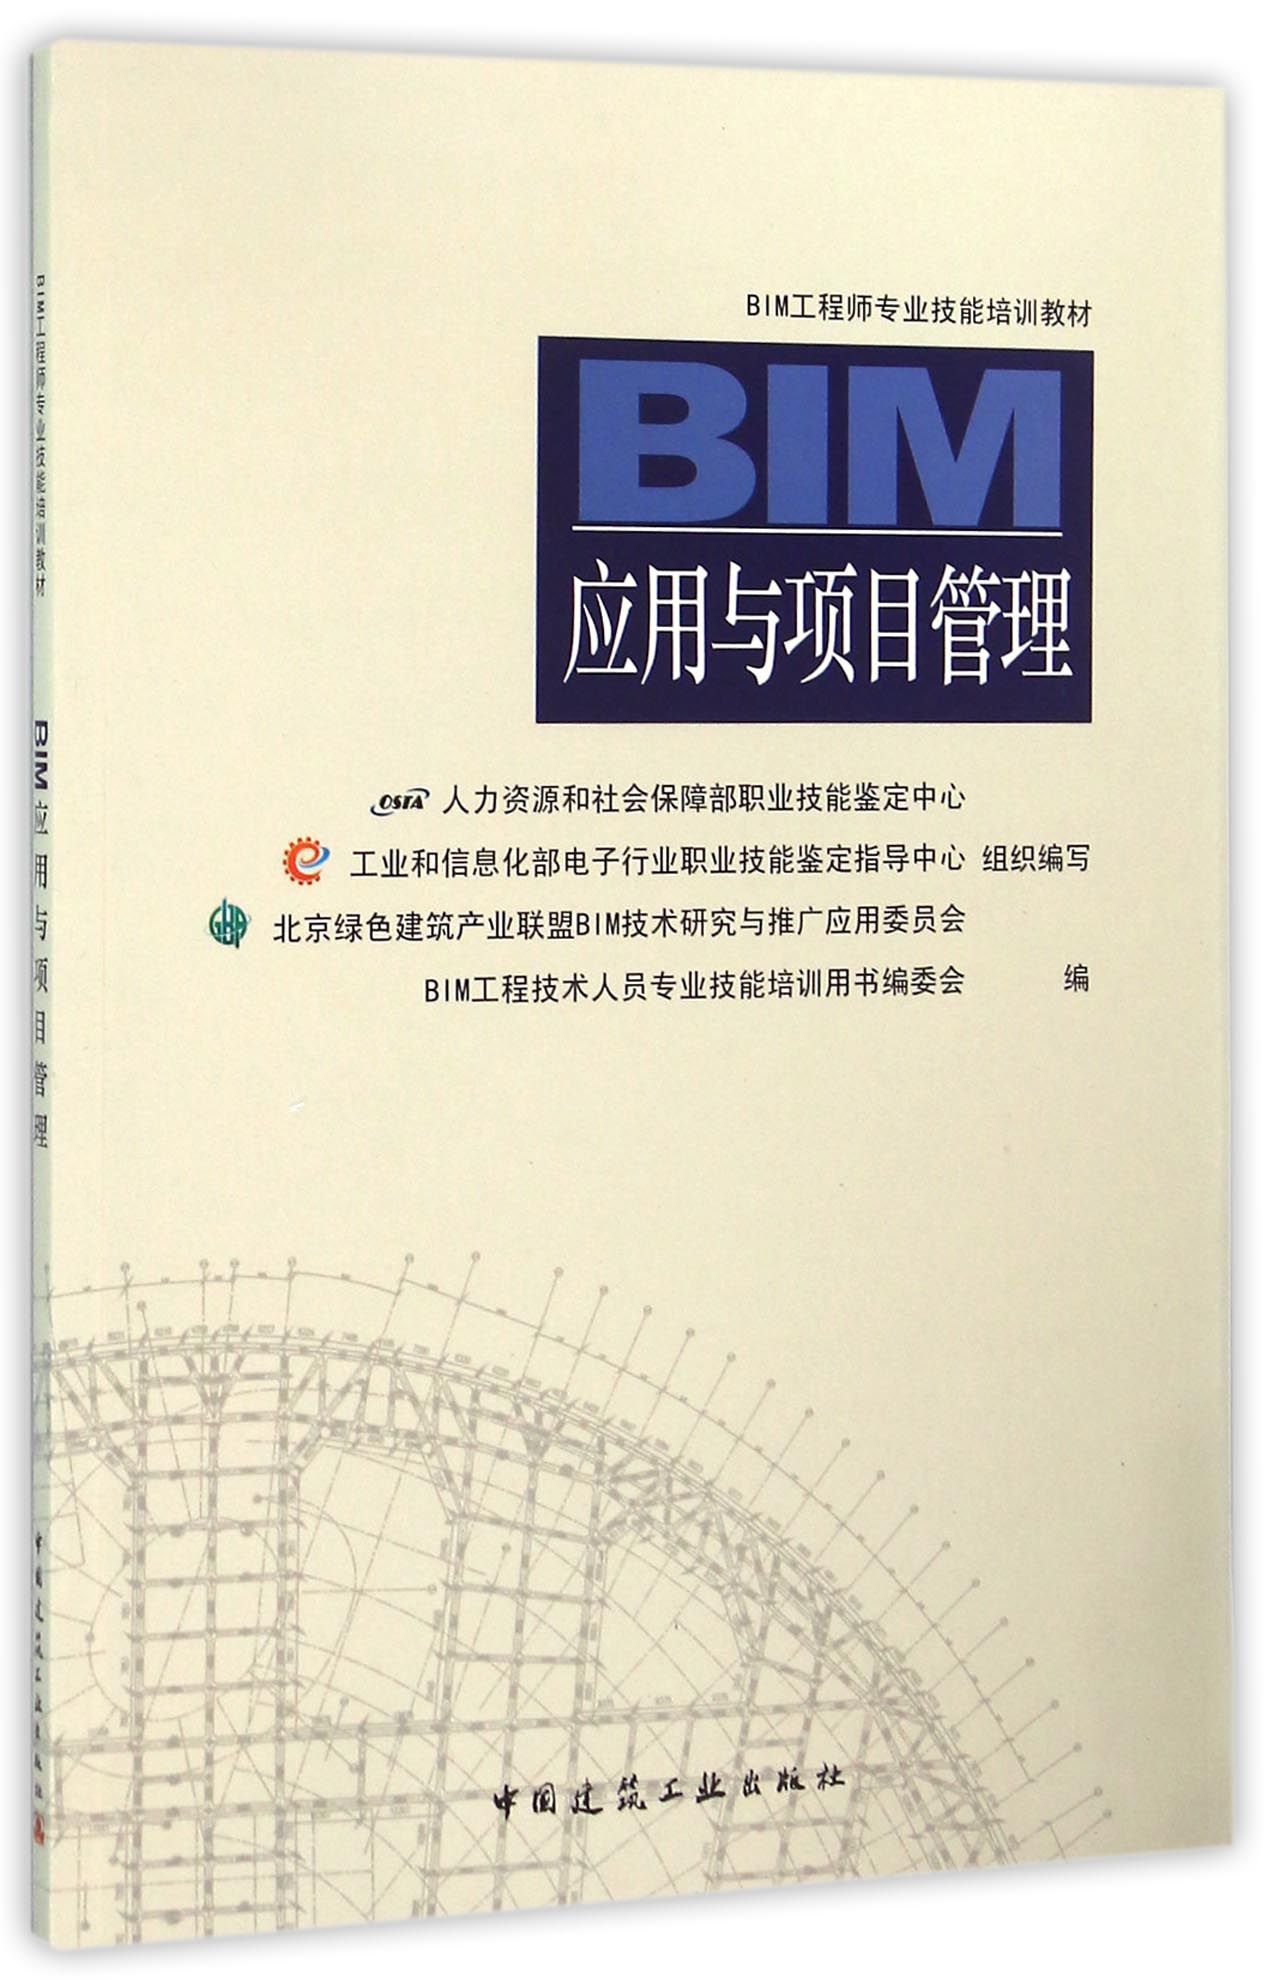 bim空间管理工程师现状bim工程管理师证书有用吗  第1张